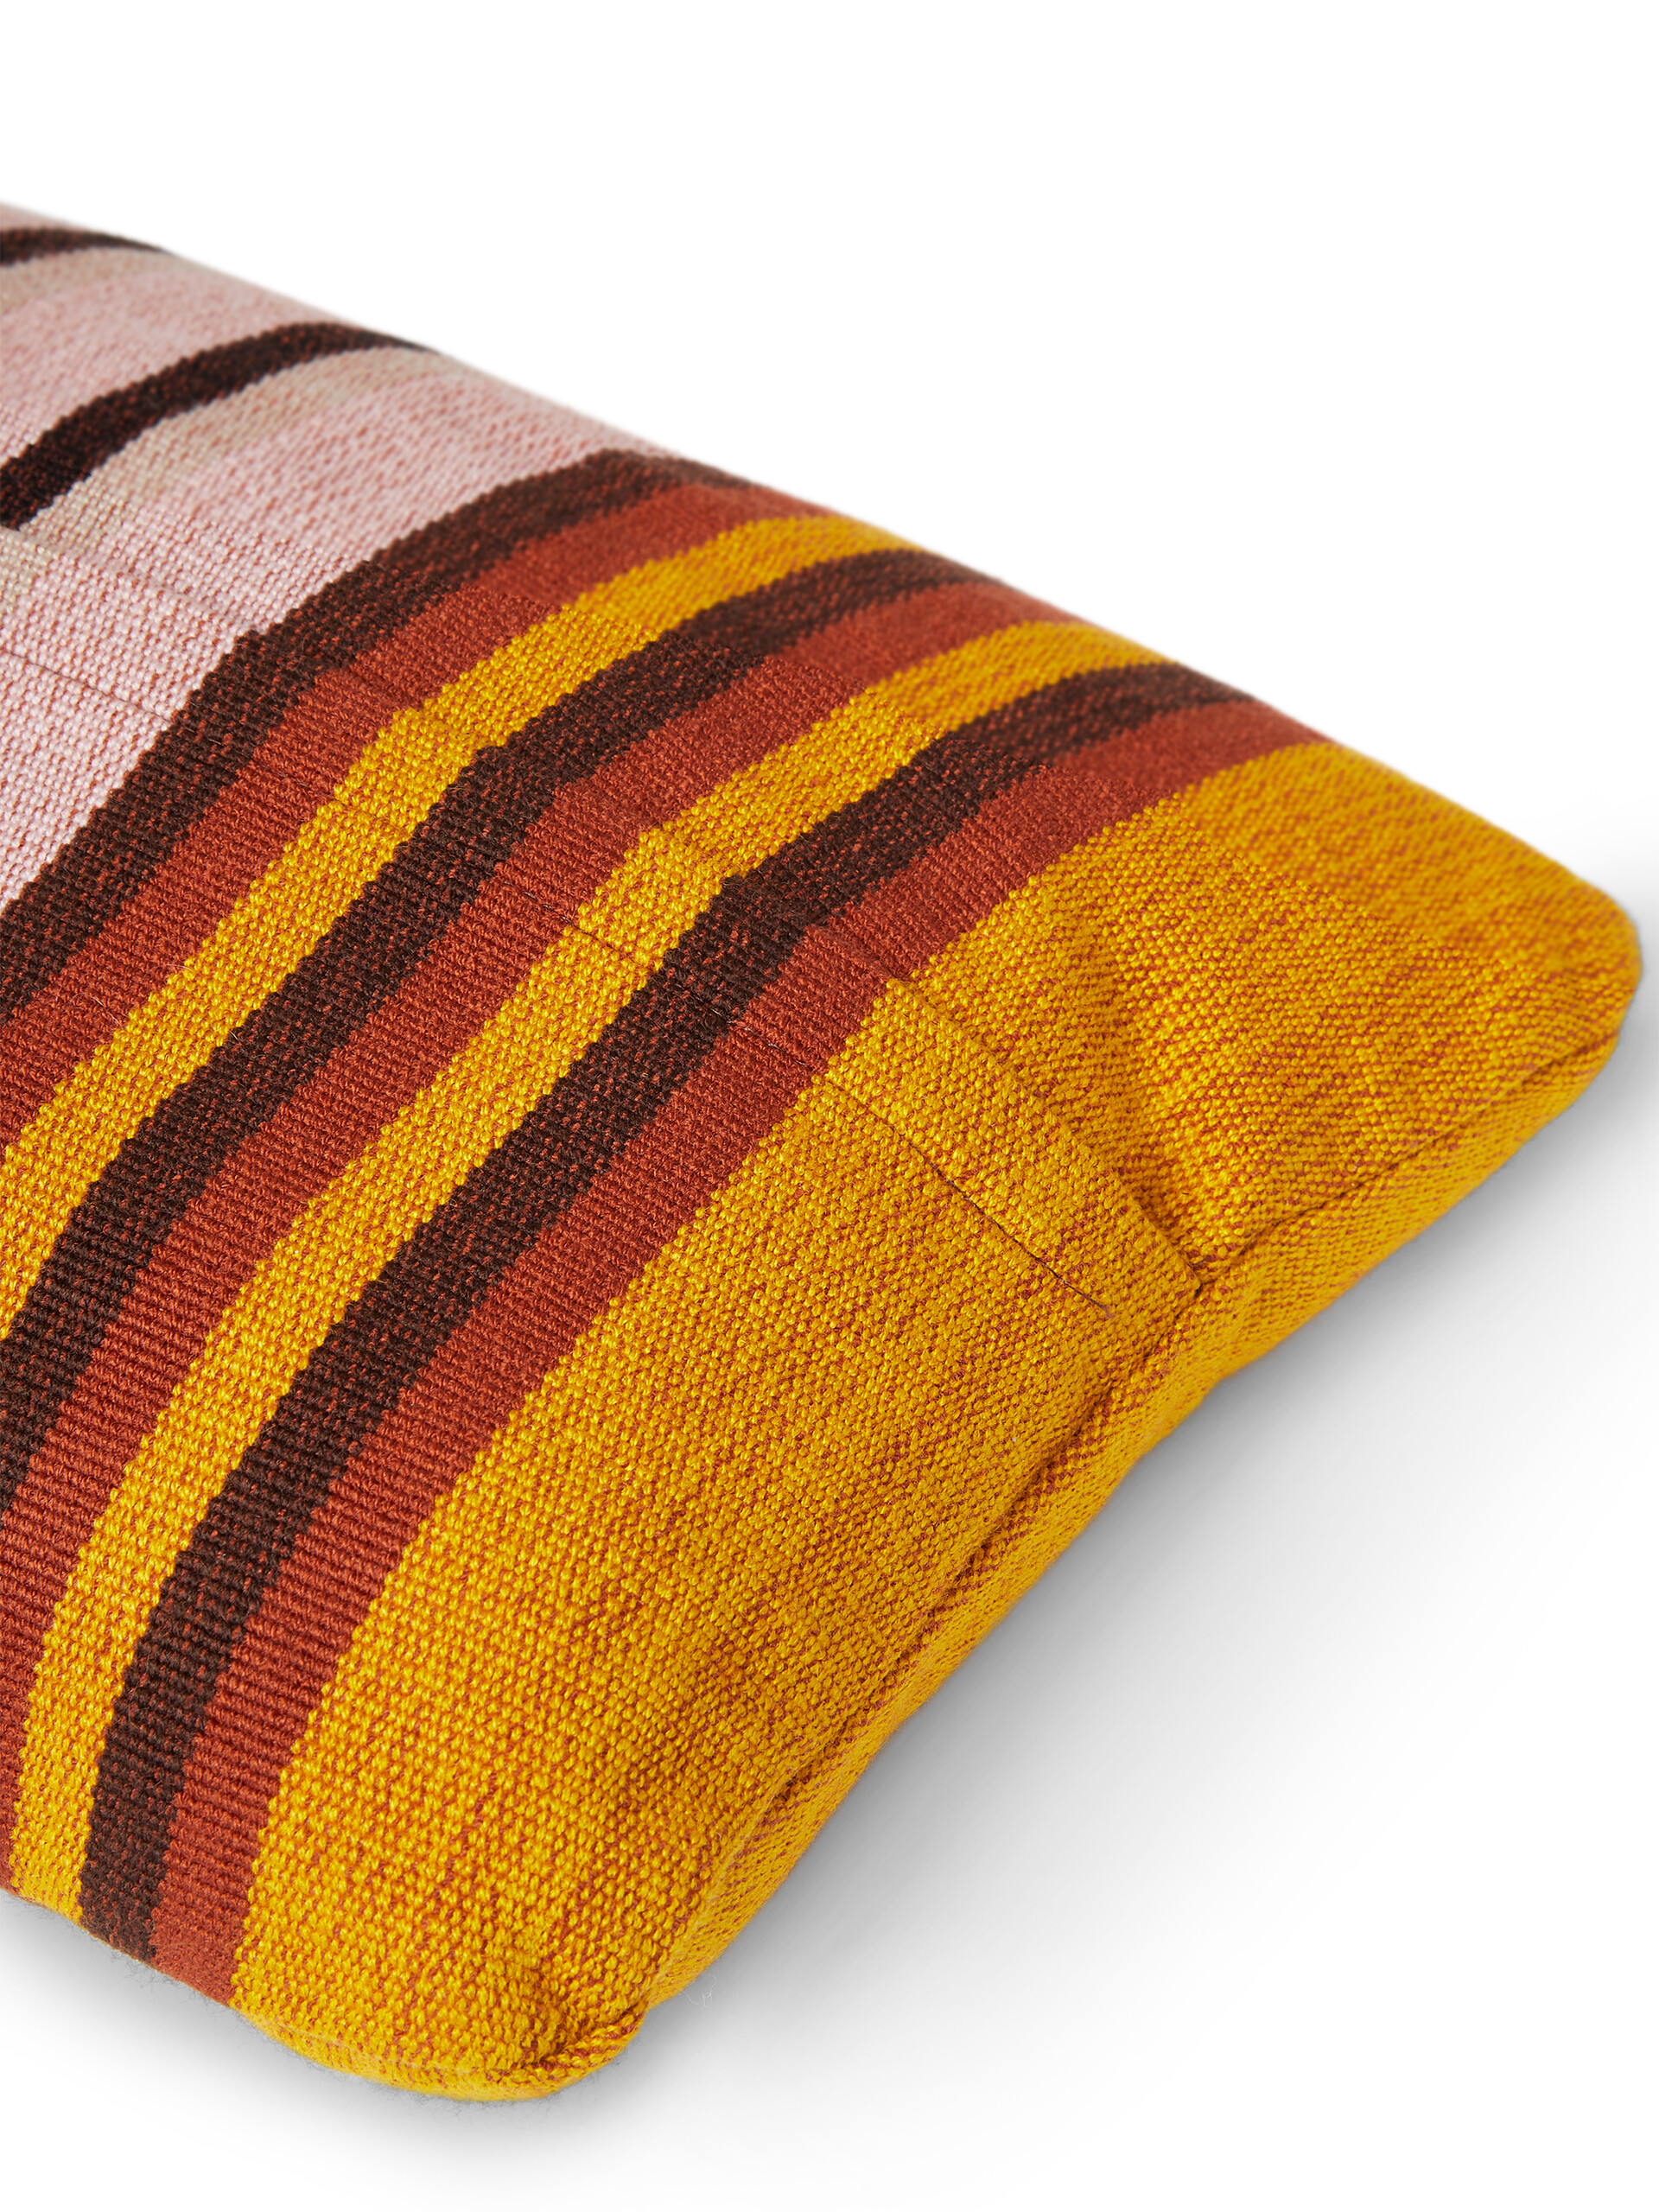 Fodera per cuscino rettangolare MARNI MARKET in poliestere giallo rosa e marrone - Arredamento - Image 3